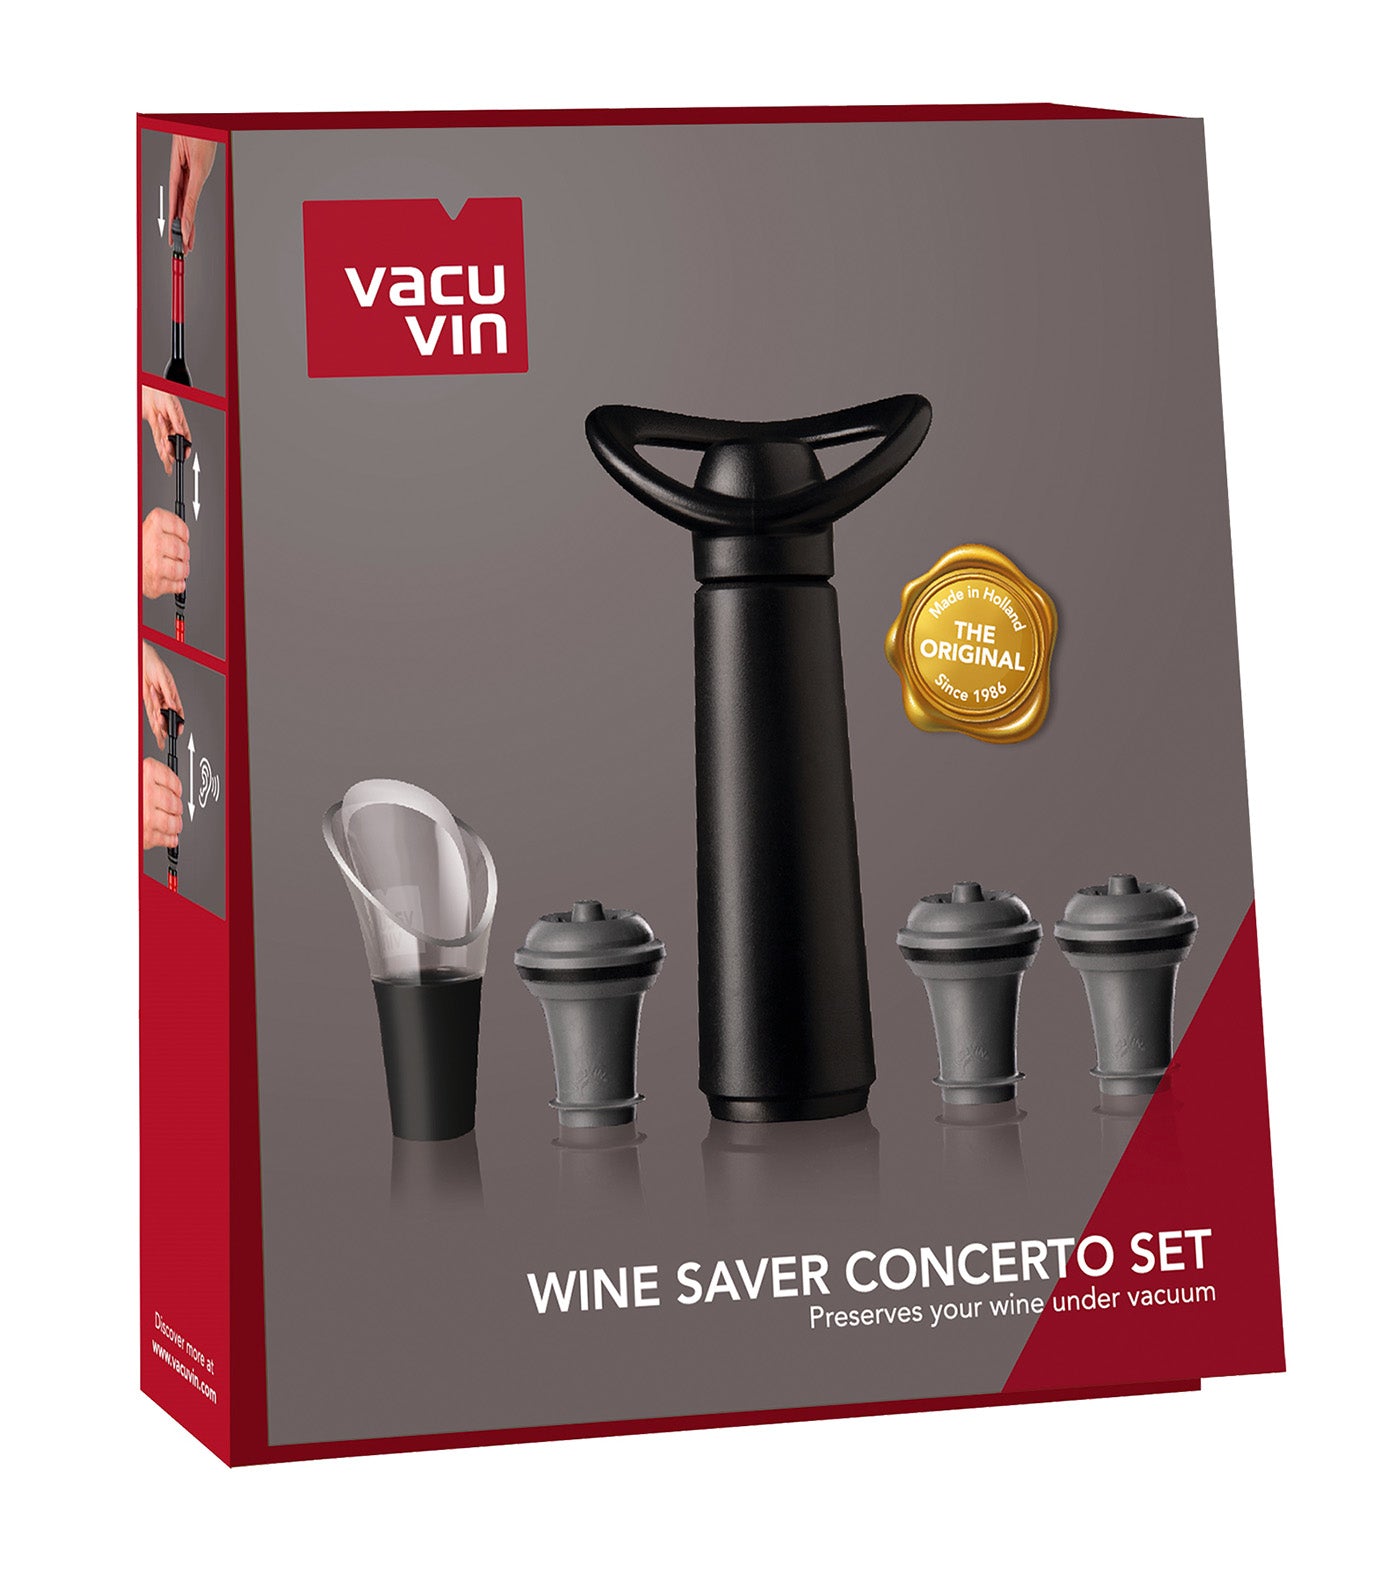 Wine Saver Concerto Black Gift Set - 1 Pump, 3 Stoppers, 1 Server